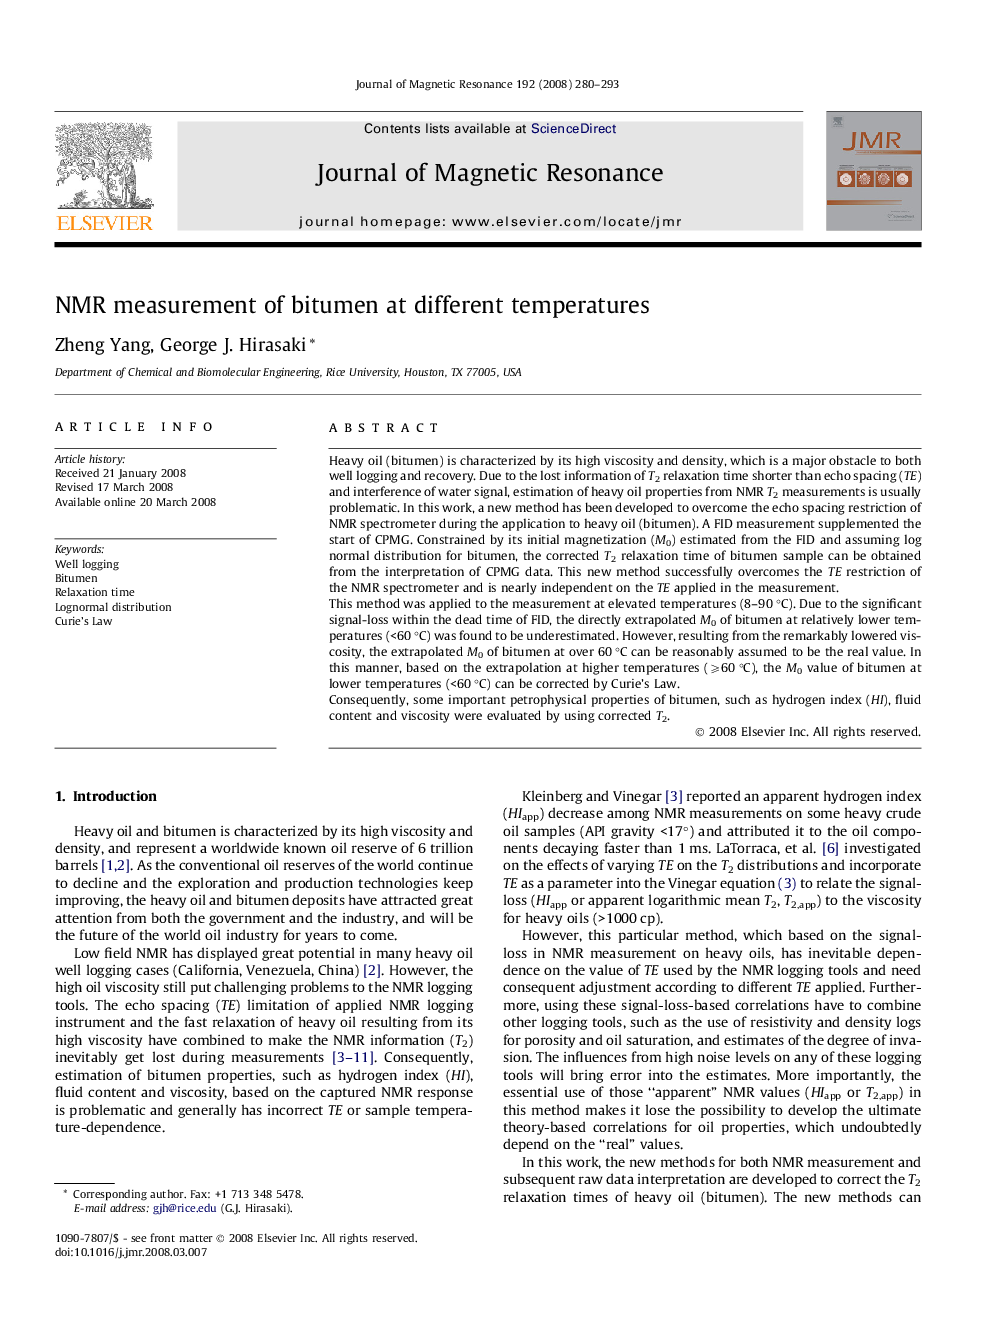 NMR measurement of bitumen at different temperatures